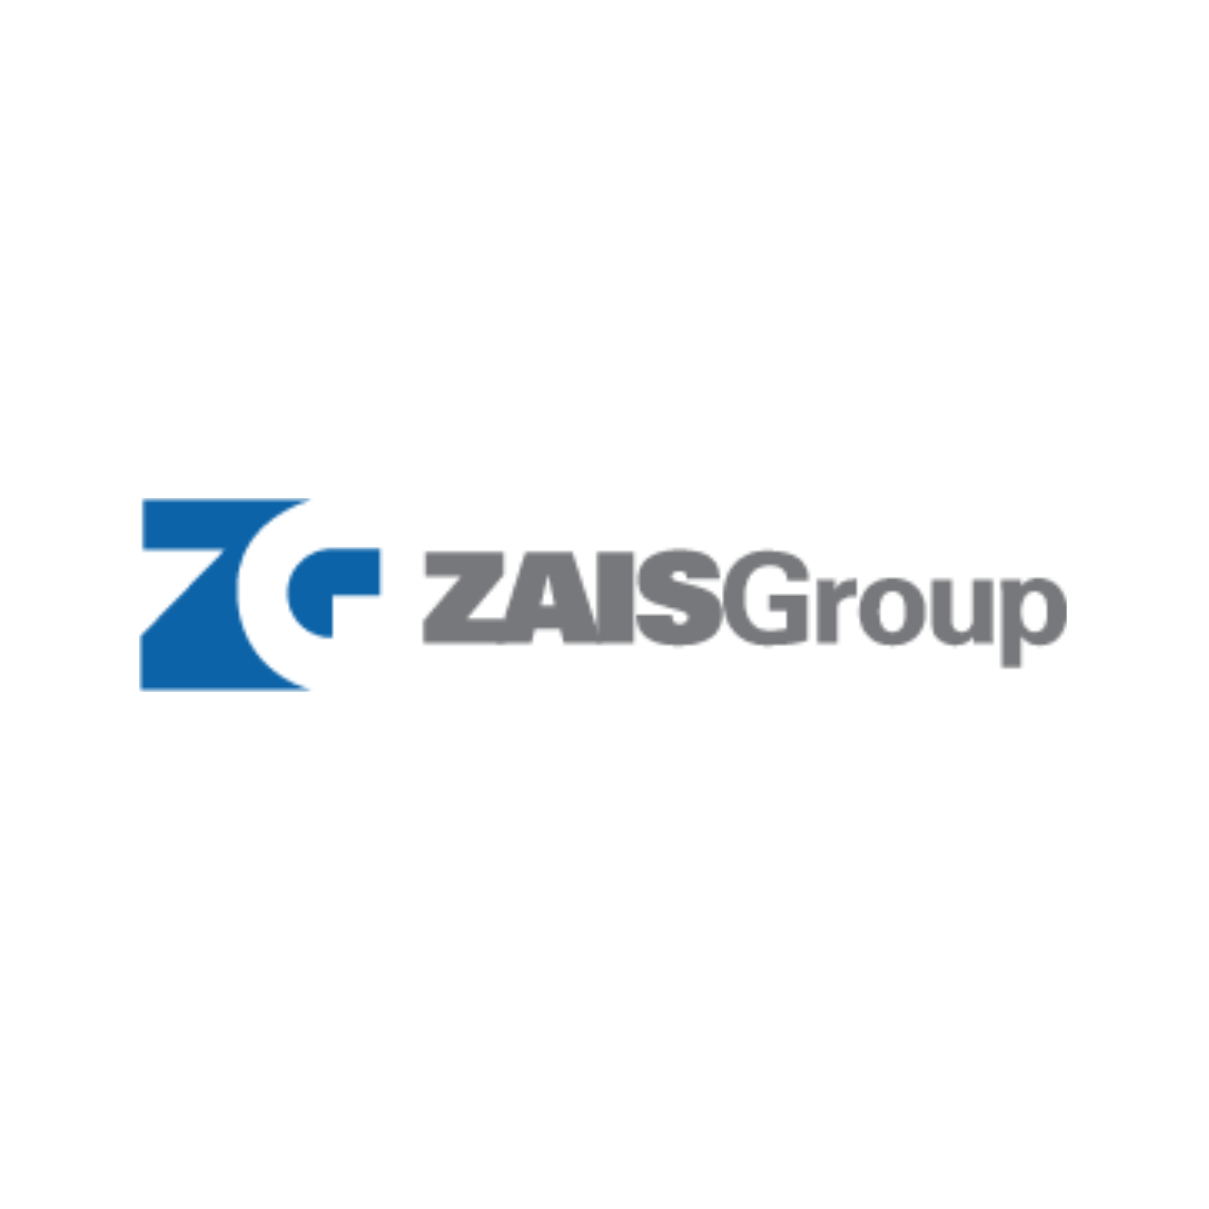 ZAIS Group